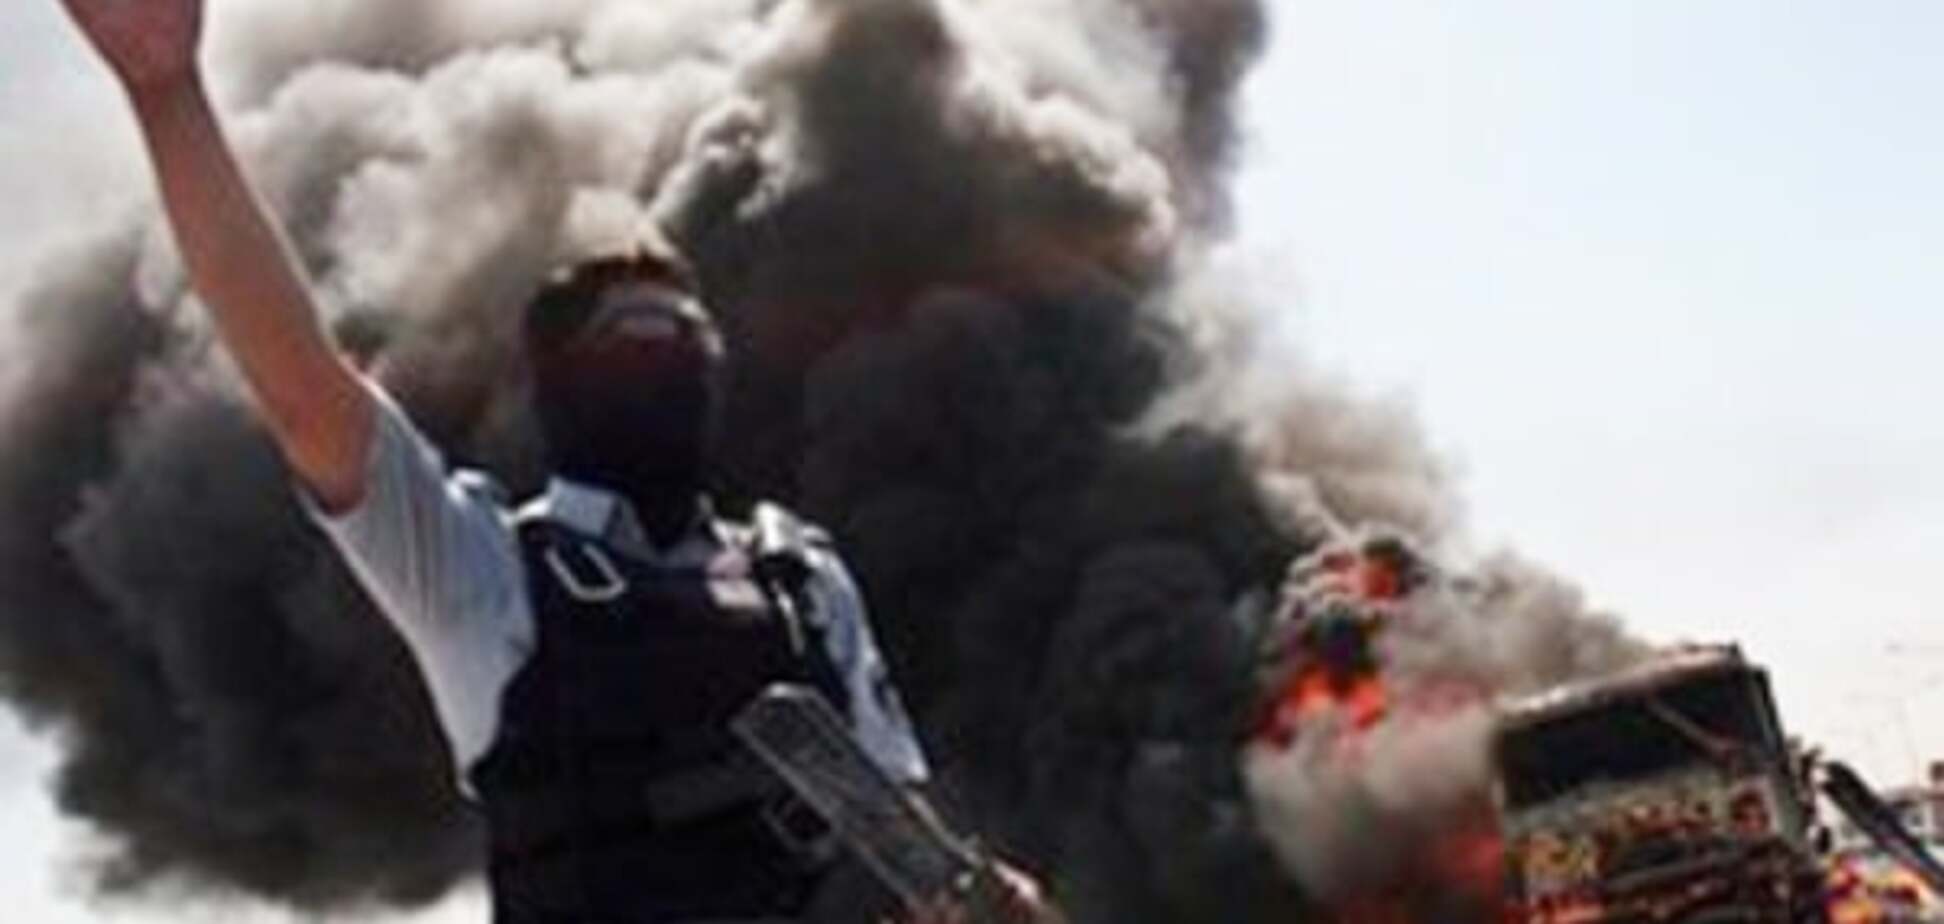 Кровавый теракт в Багдаде унес жизни 7 человек - СМИ